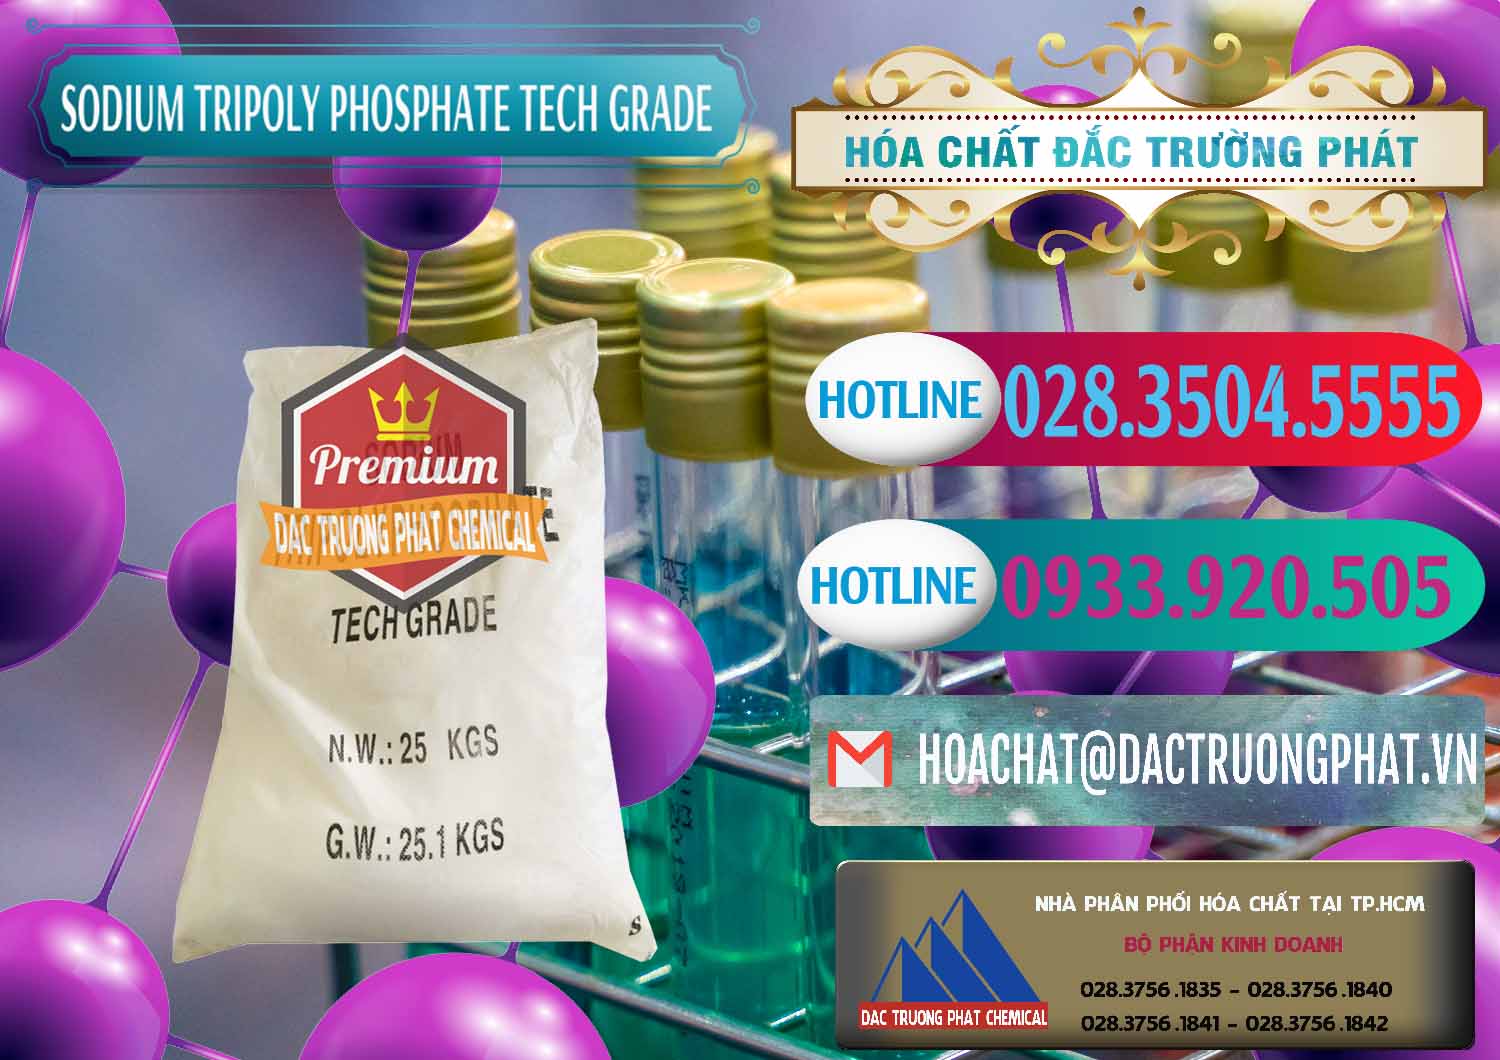 Cung cấp _ bán Sodium Tripoly Phosphate - STPP Tech Grade Trung Quốc China - 0453 - Công ty phân phối và cung ứng hóa chất tại TP.HCM - truongphat.vn